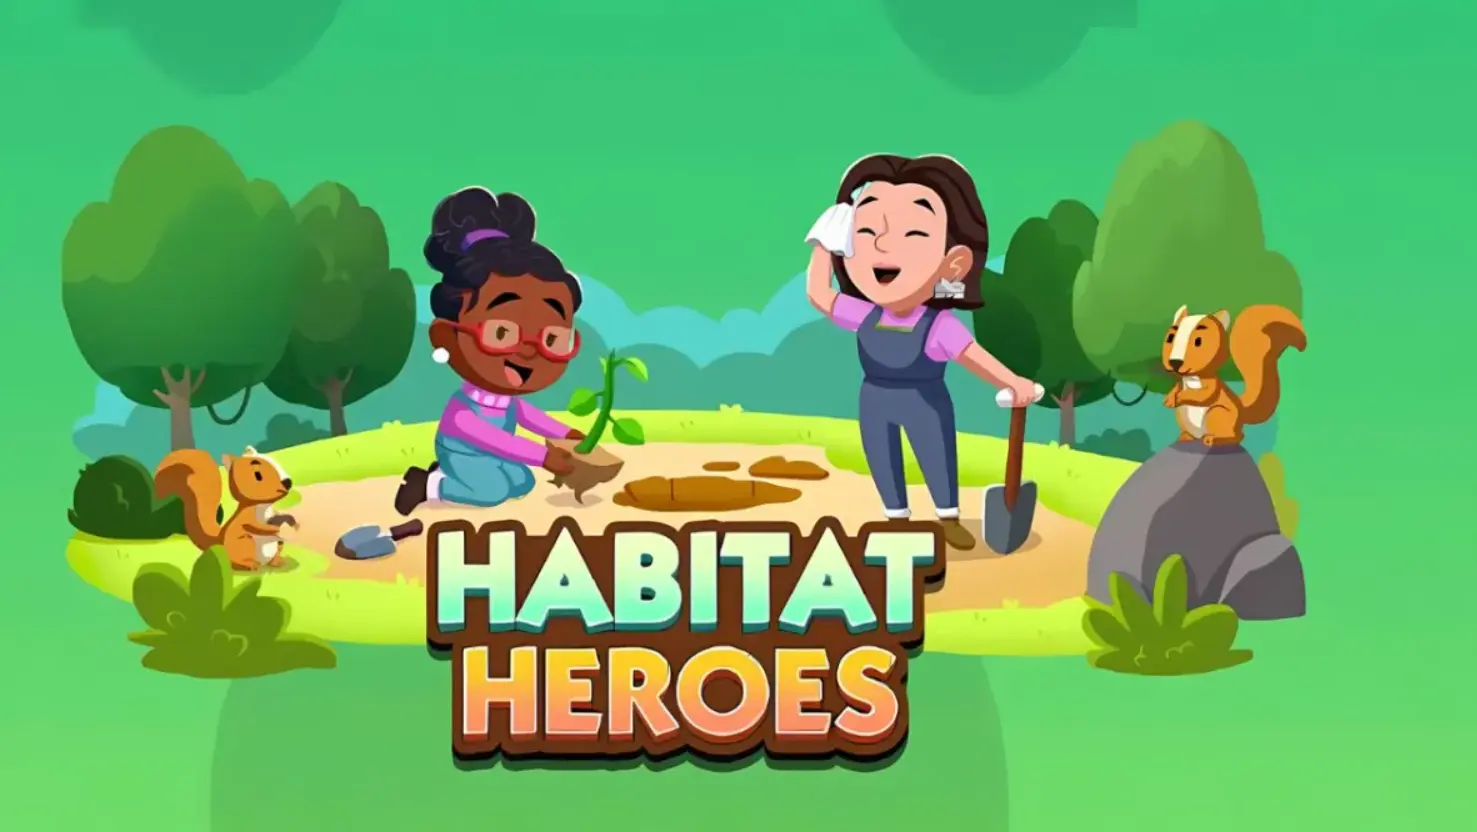 monopoly-go-habitat-heroes-rewards-and-milestones